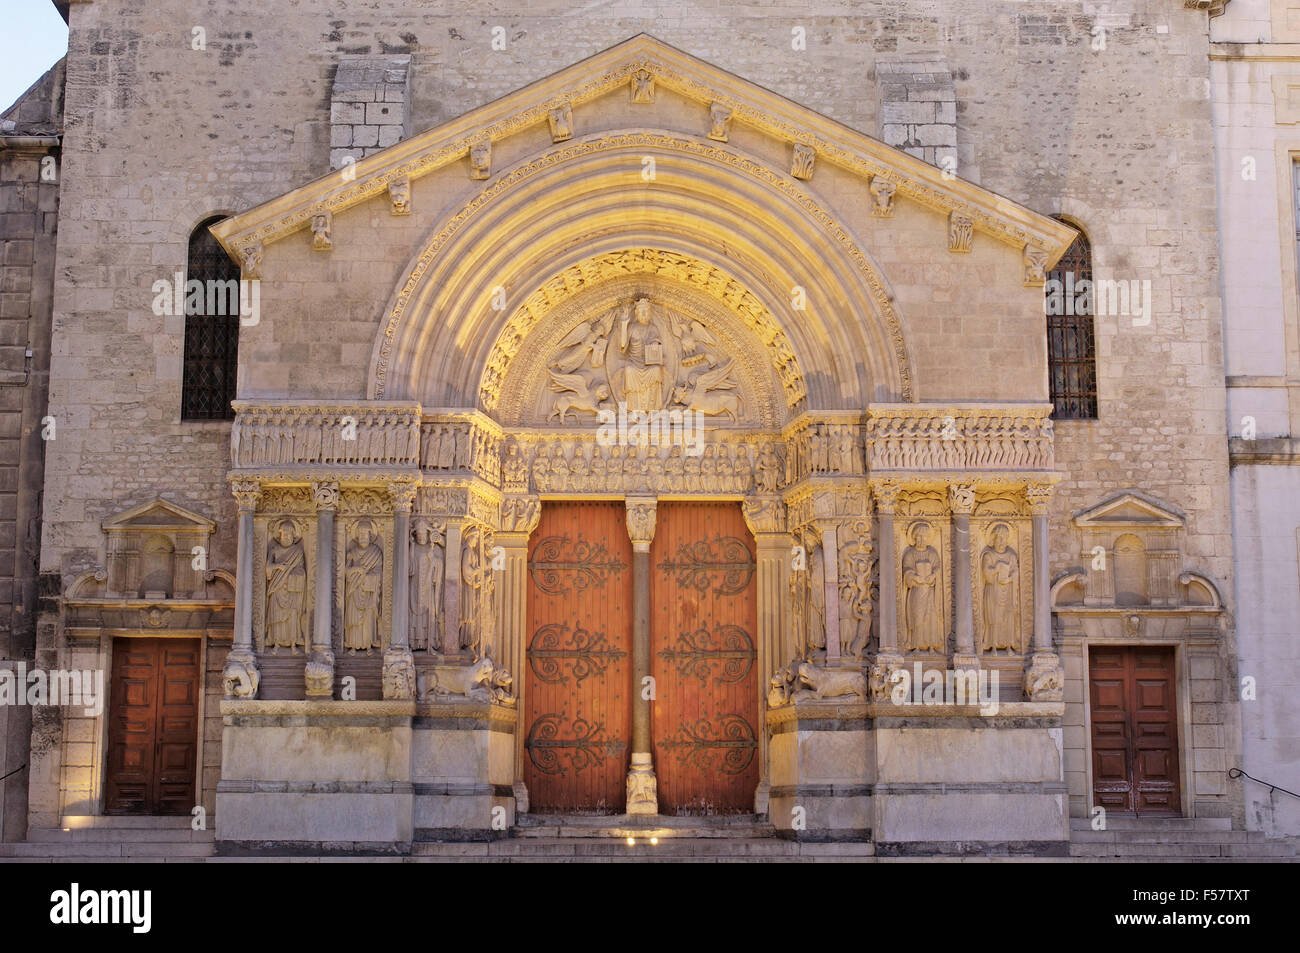 Saint Trophime cathedral at Place de la Republique at Dusk. Arles. Bouches du Rhone. Provence. France Stock Photo